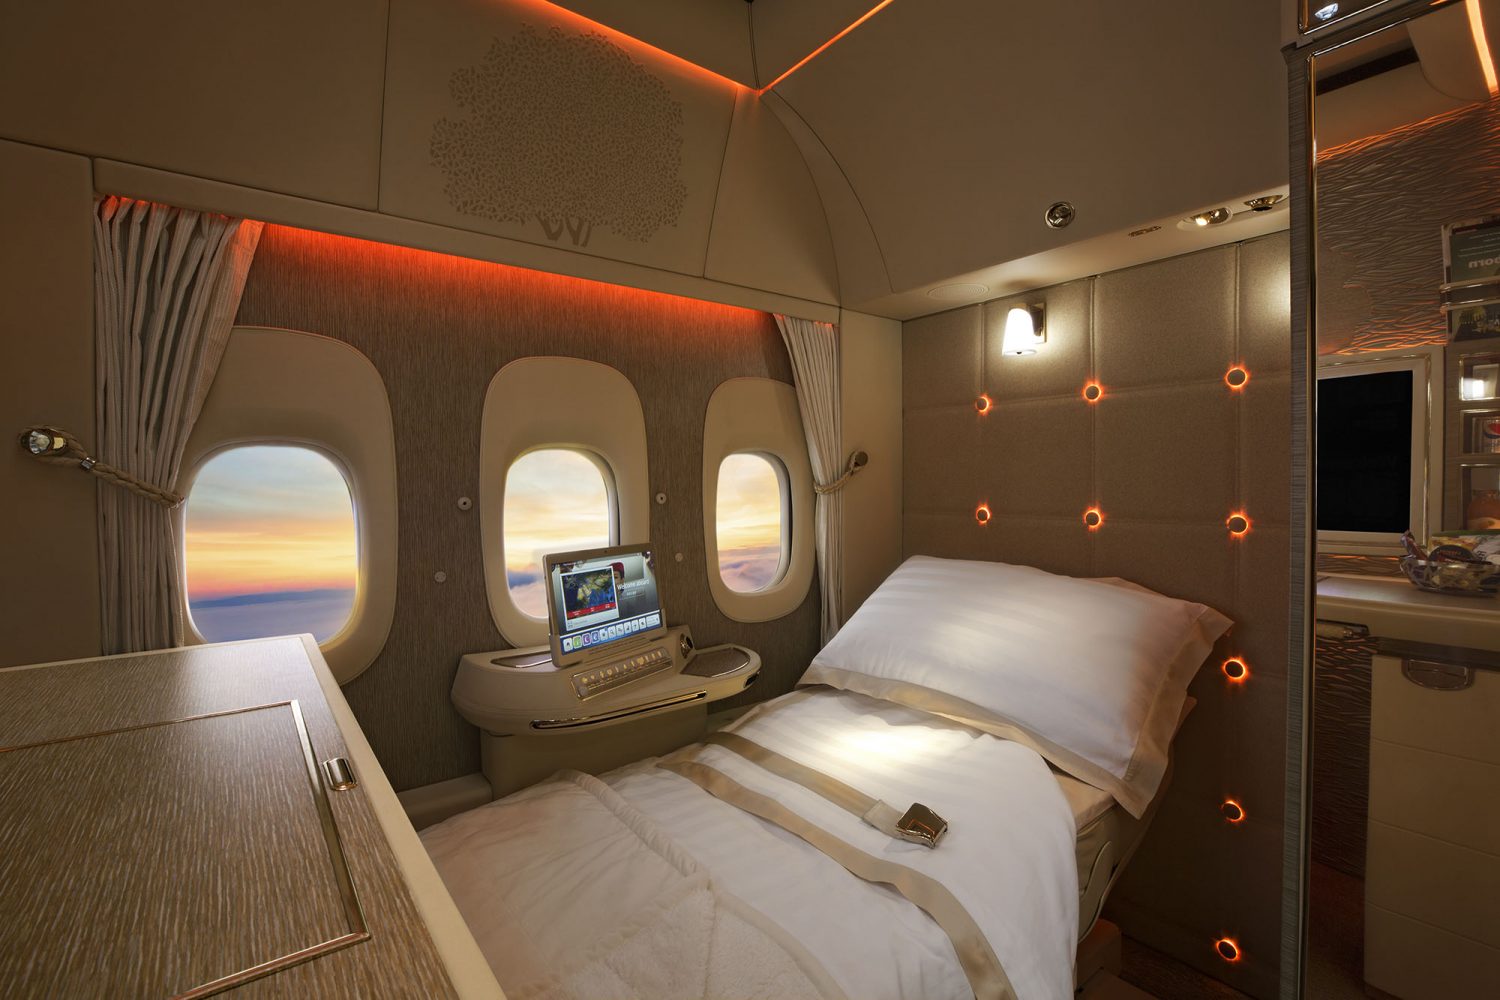 Op interieurfoto van de 'Game Changer' First Class-cabine aan boord van een Emirates Airline Boeing 777 van fotograaf Duncan Chard